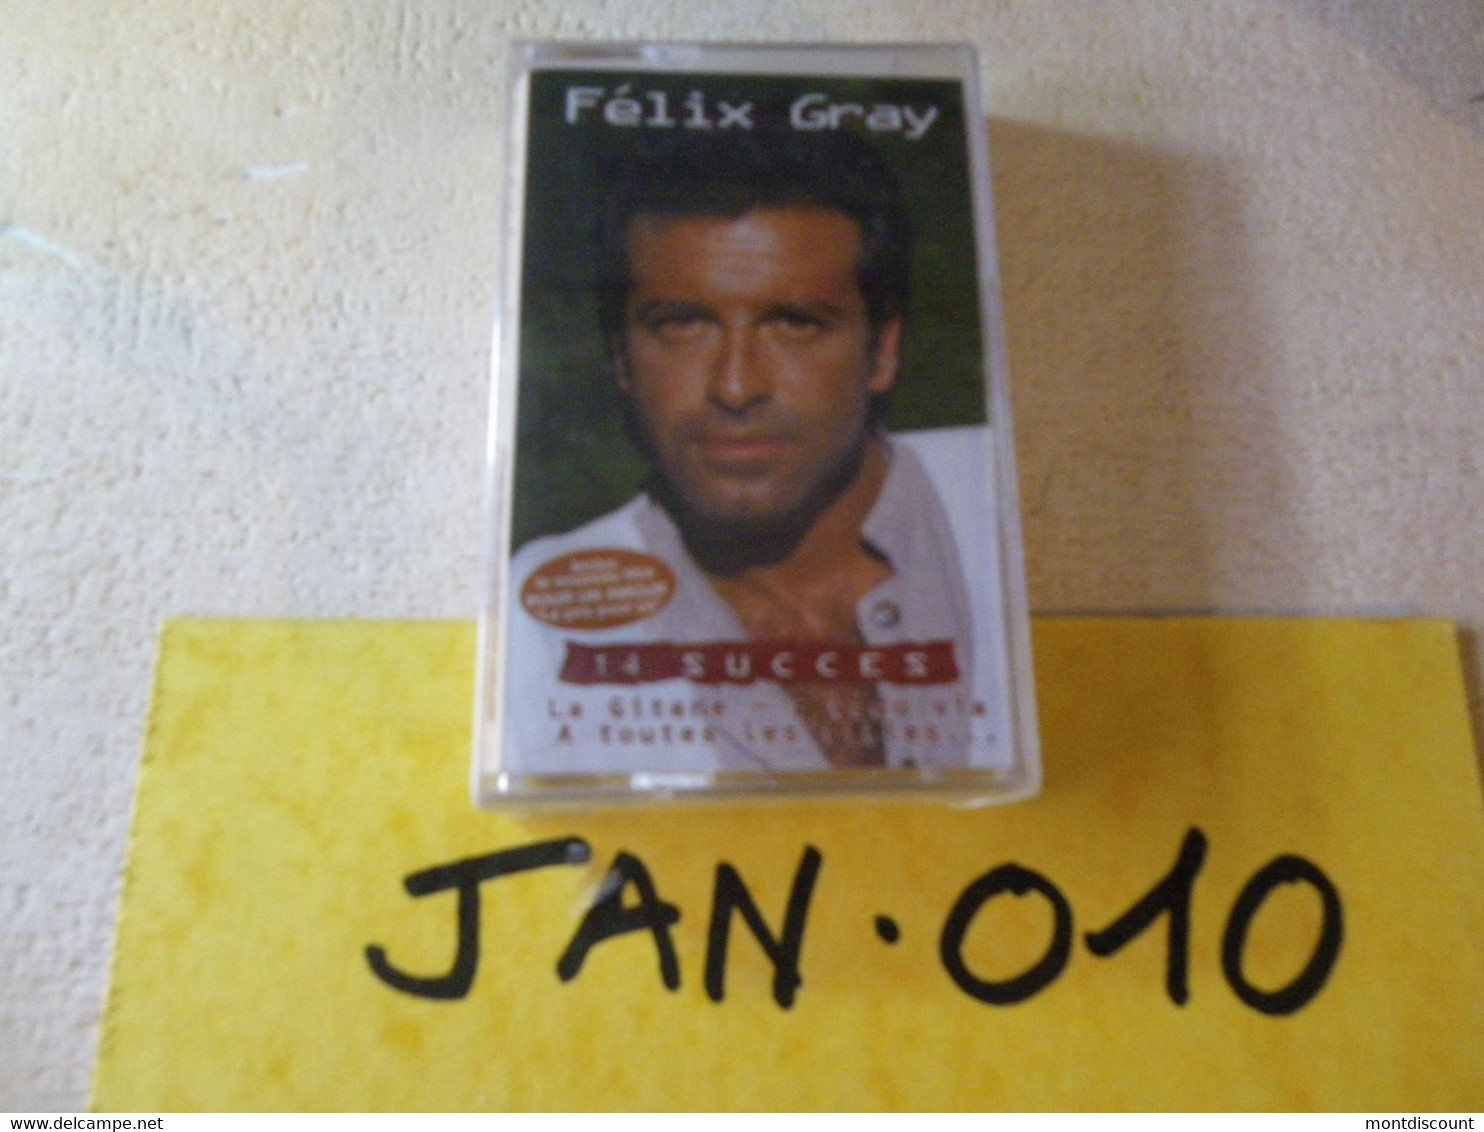 FELIX GRAY K7 AUDIO EMBALLE D'ORIGINE JAMAIS SERVIE... VOIR PHOTO... (JAN 010) - Cassettes Audio